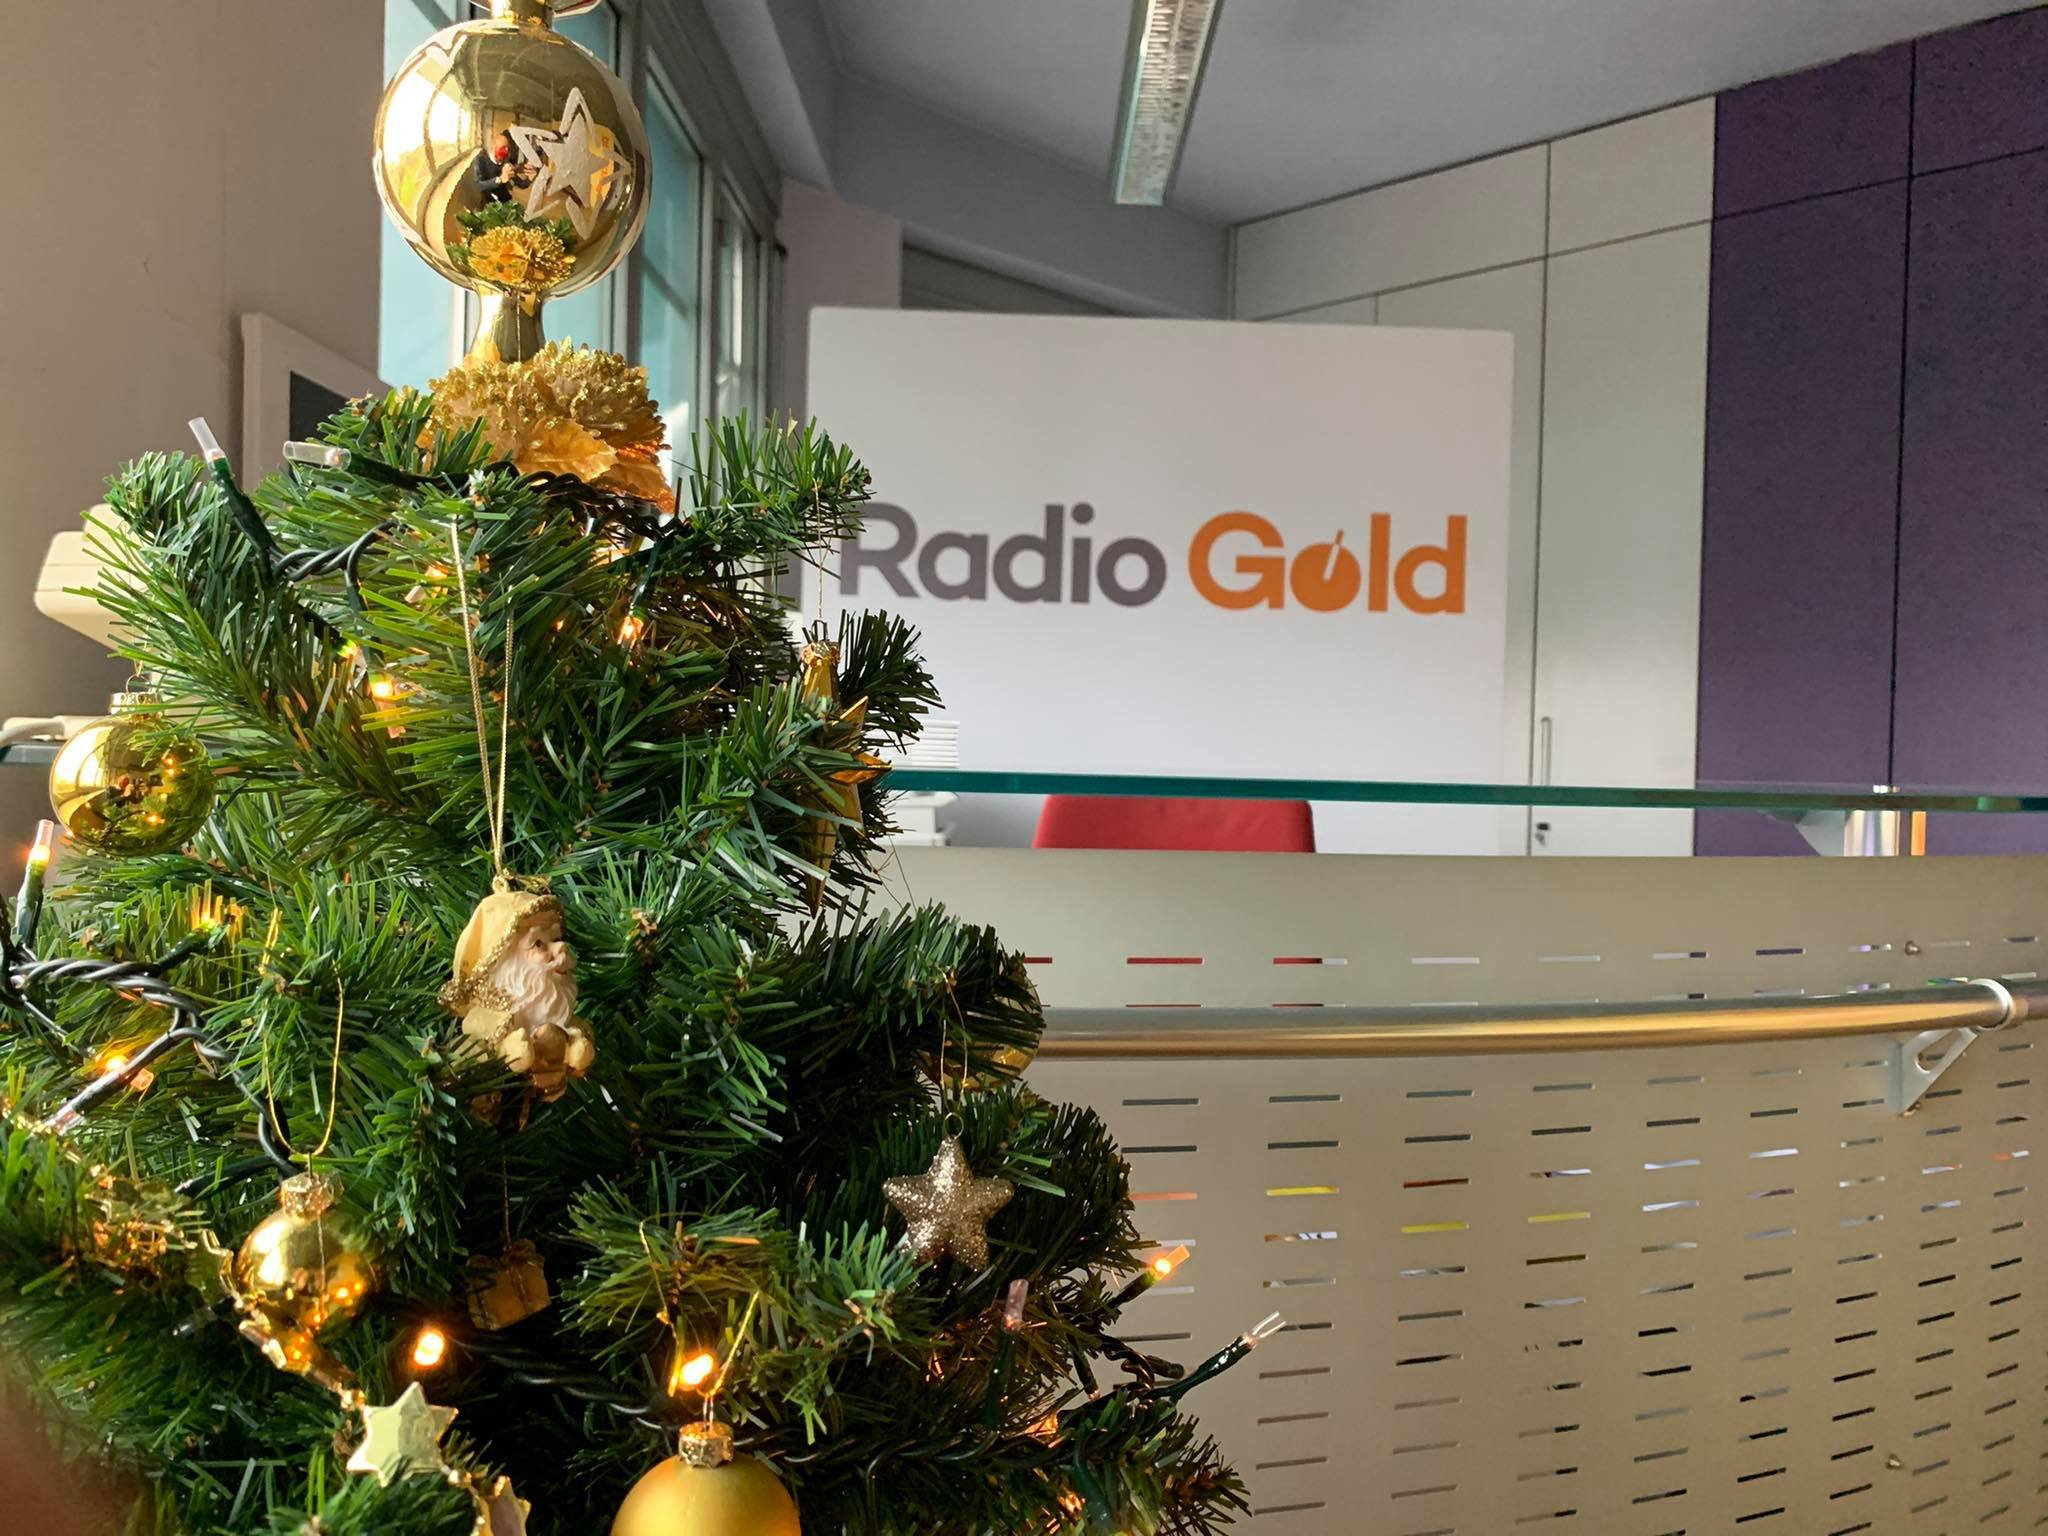 Il 25 dicembre RadioGold non ti lascia solo: dalle 9 alle 12 parte lo speciale di Natale